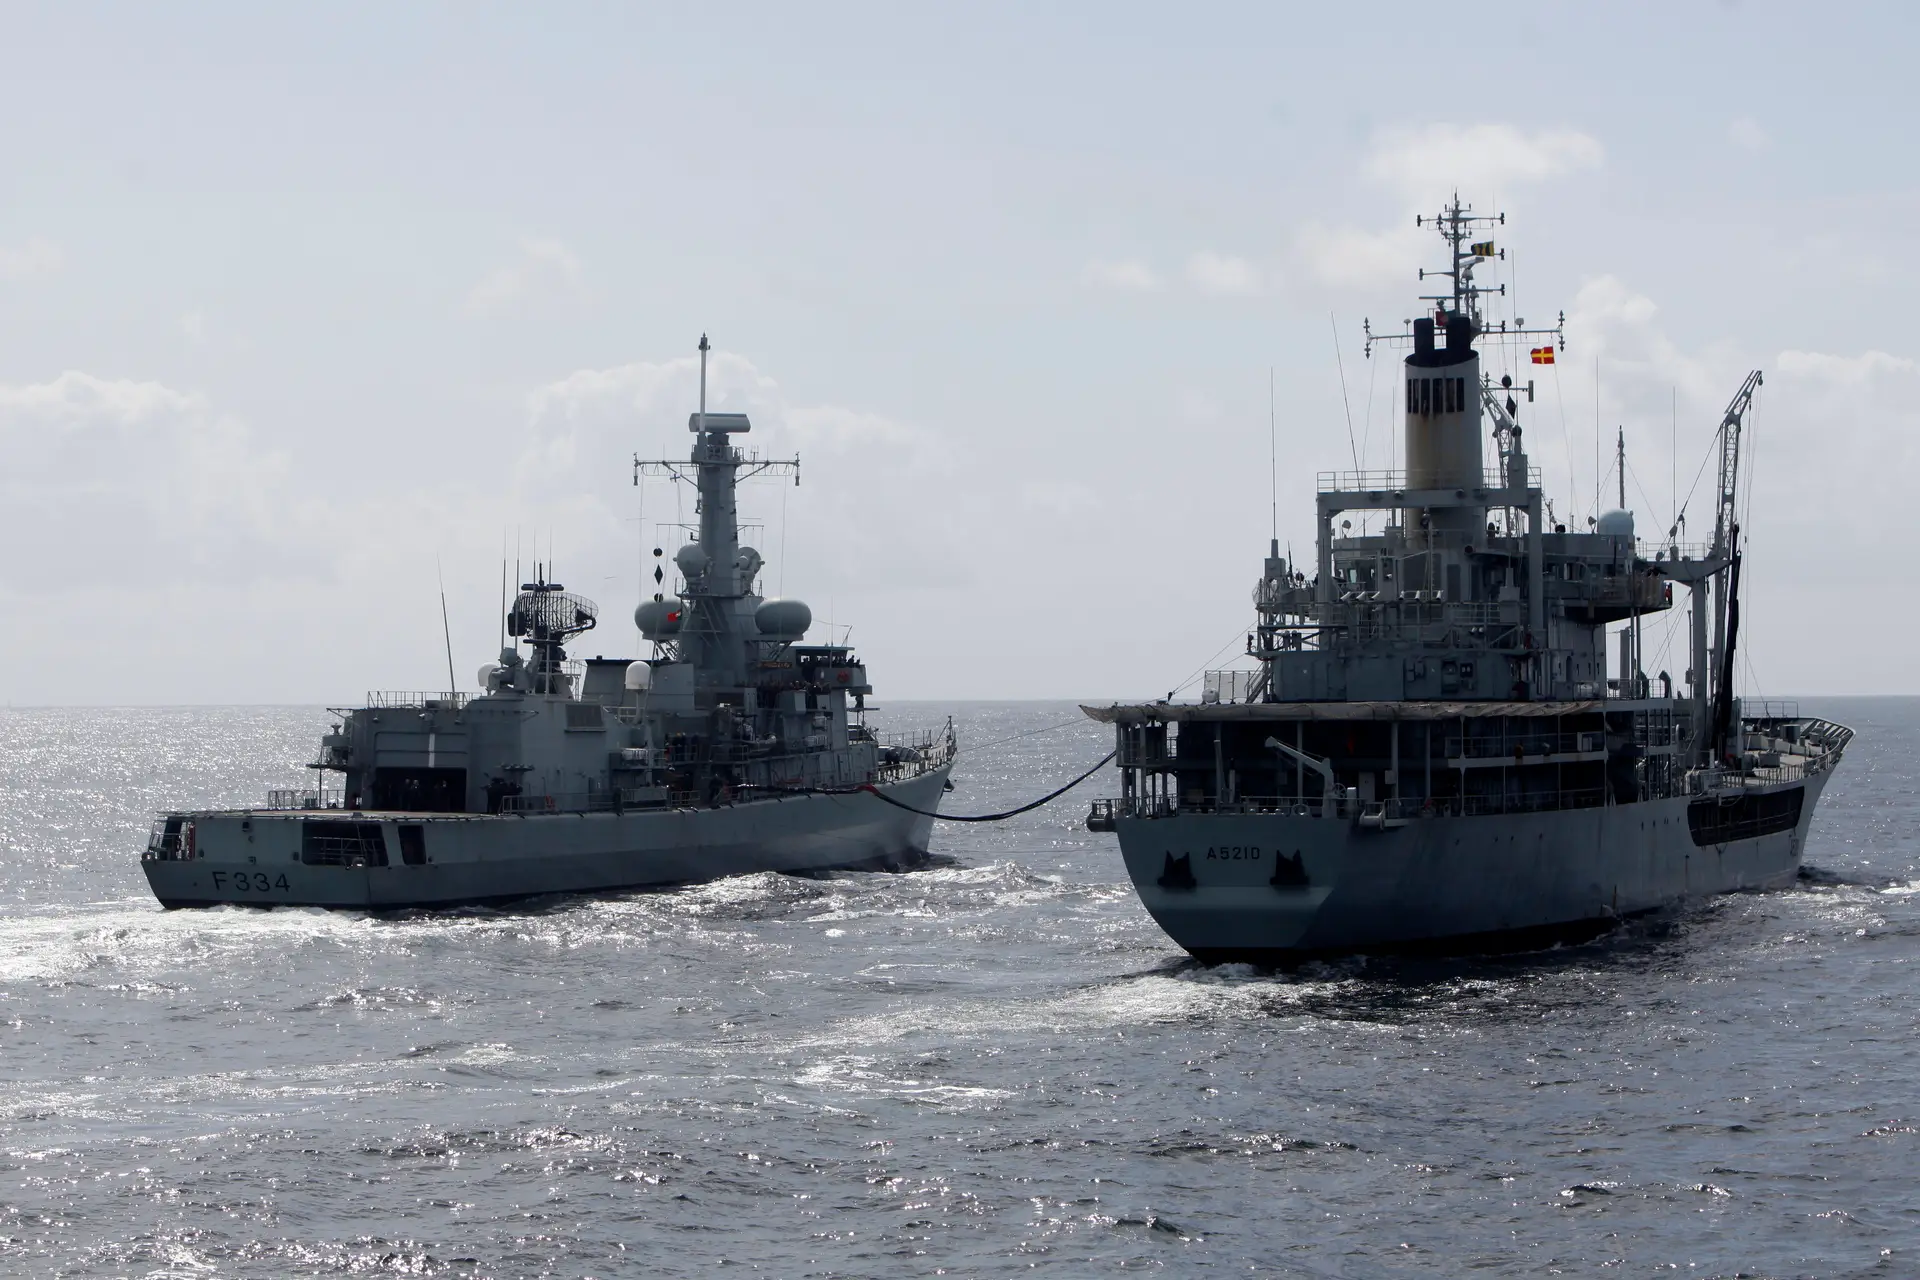 Marinha impede trasfega de crude em águas da Madeira